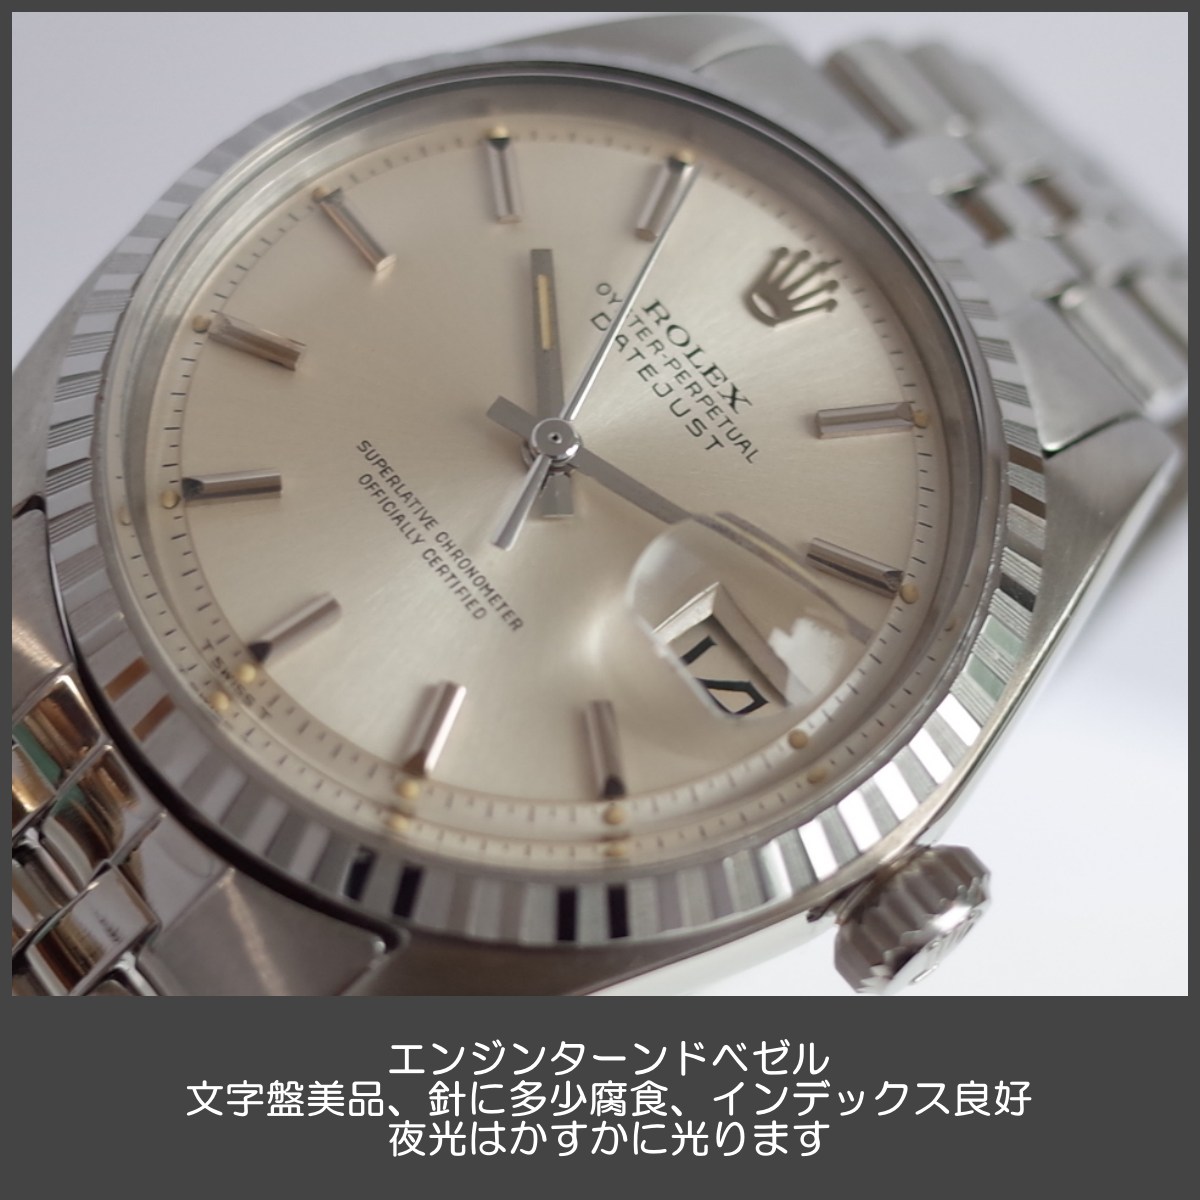 【スーパー】美品『USED』 ROLEX ロレックス Date Just 116234 腕時計 自動巻き メンズ 男性用